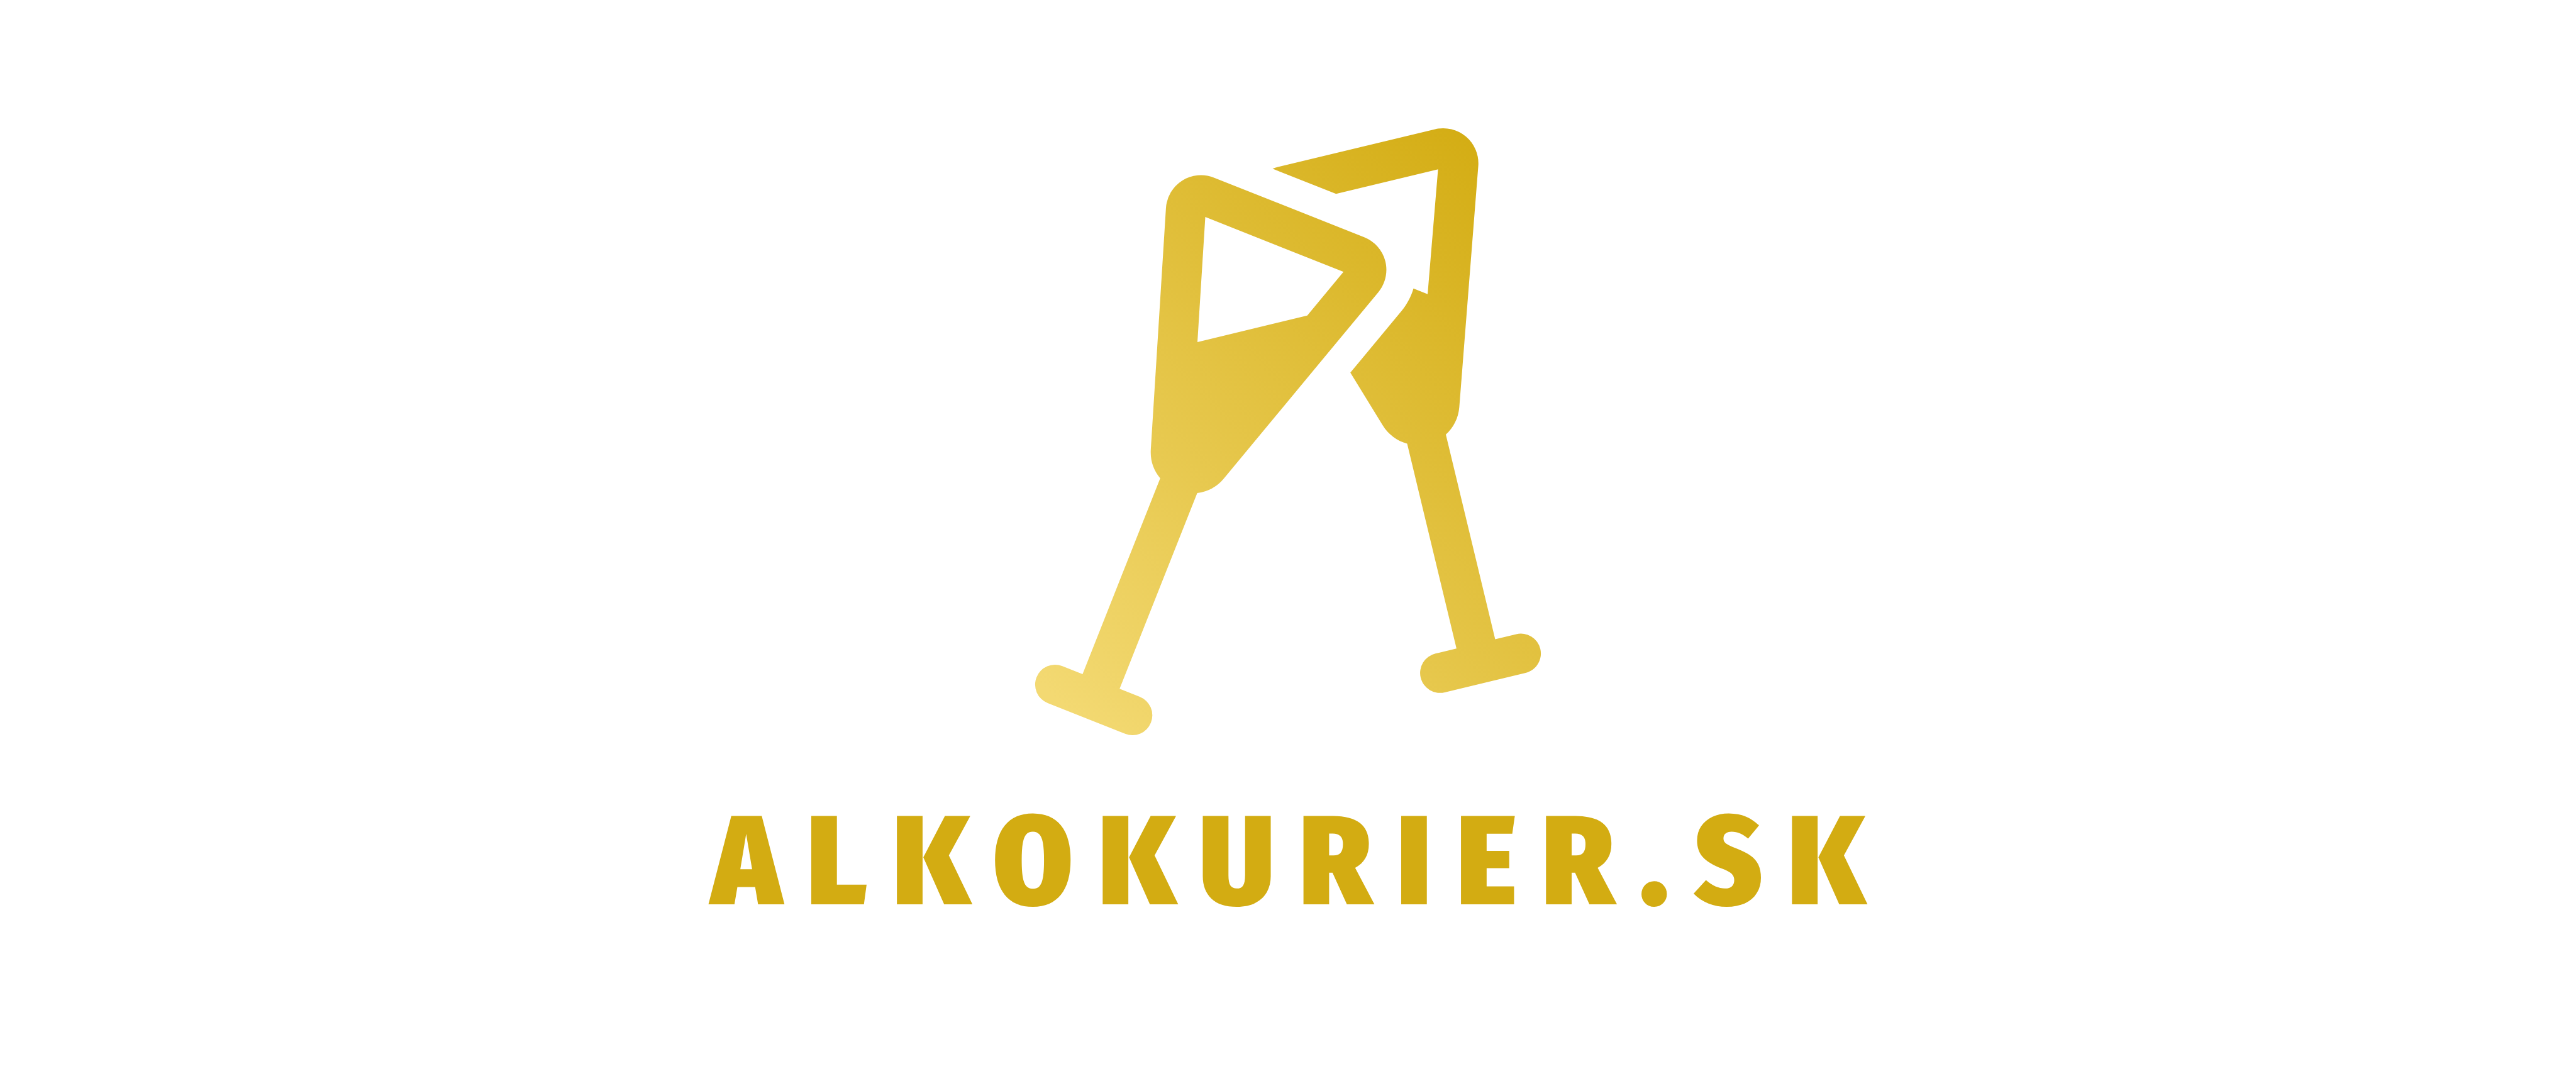 Alkokurier.sk - Donáška alkoholu, pochutín a drogérie v Bratislave a okolí